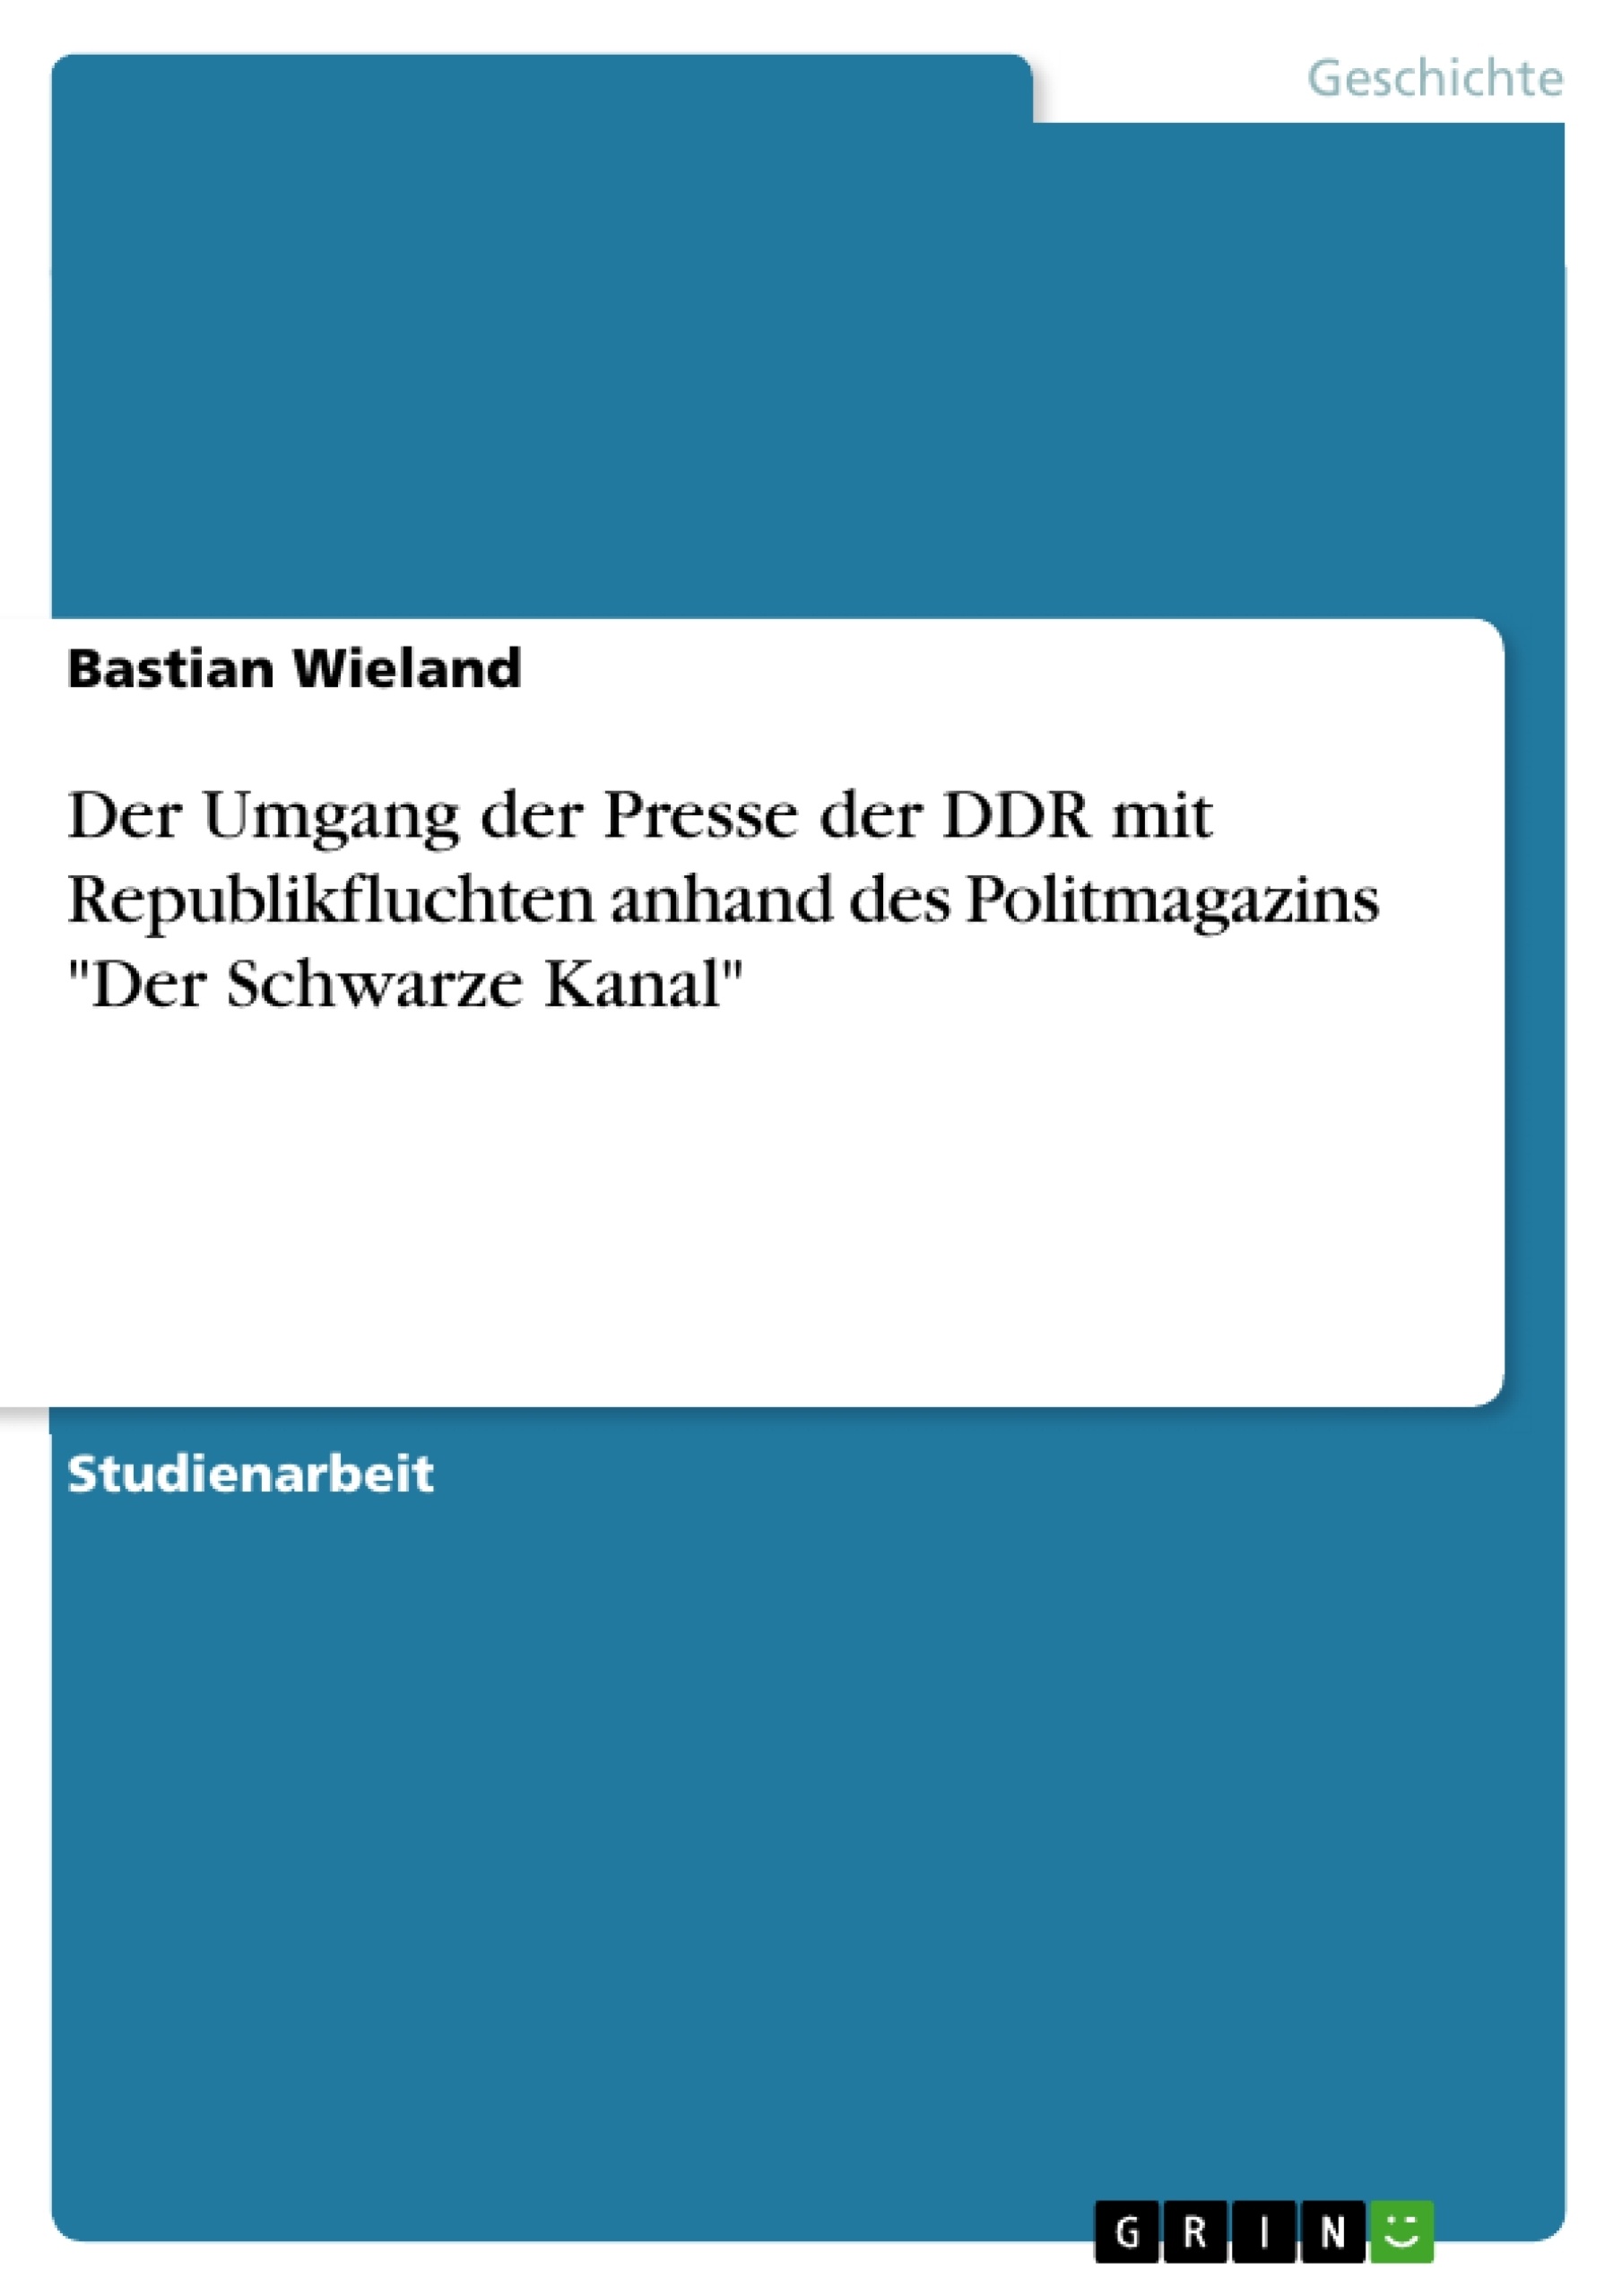 Titel: Der Umgang der Presse der DDR mit Republikfluchten anhand des Politmagazins "Der Schwarze Kanal"